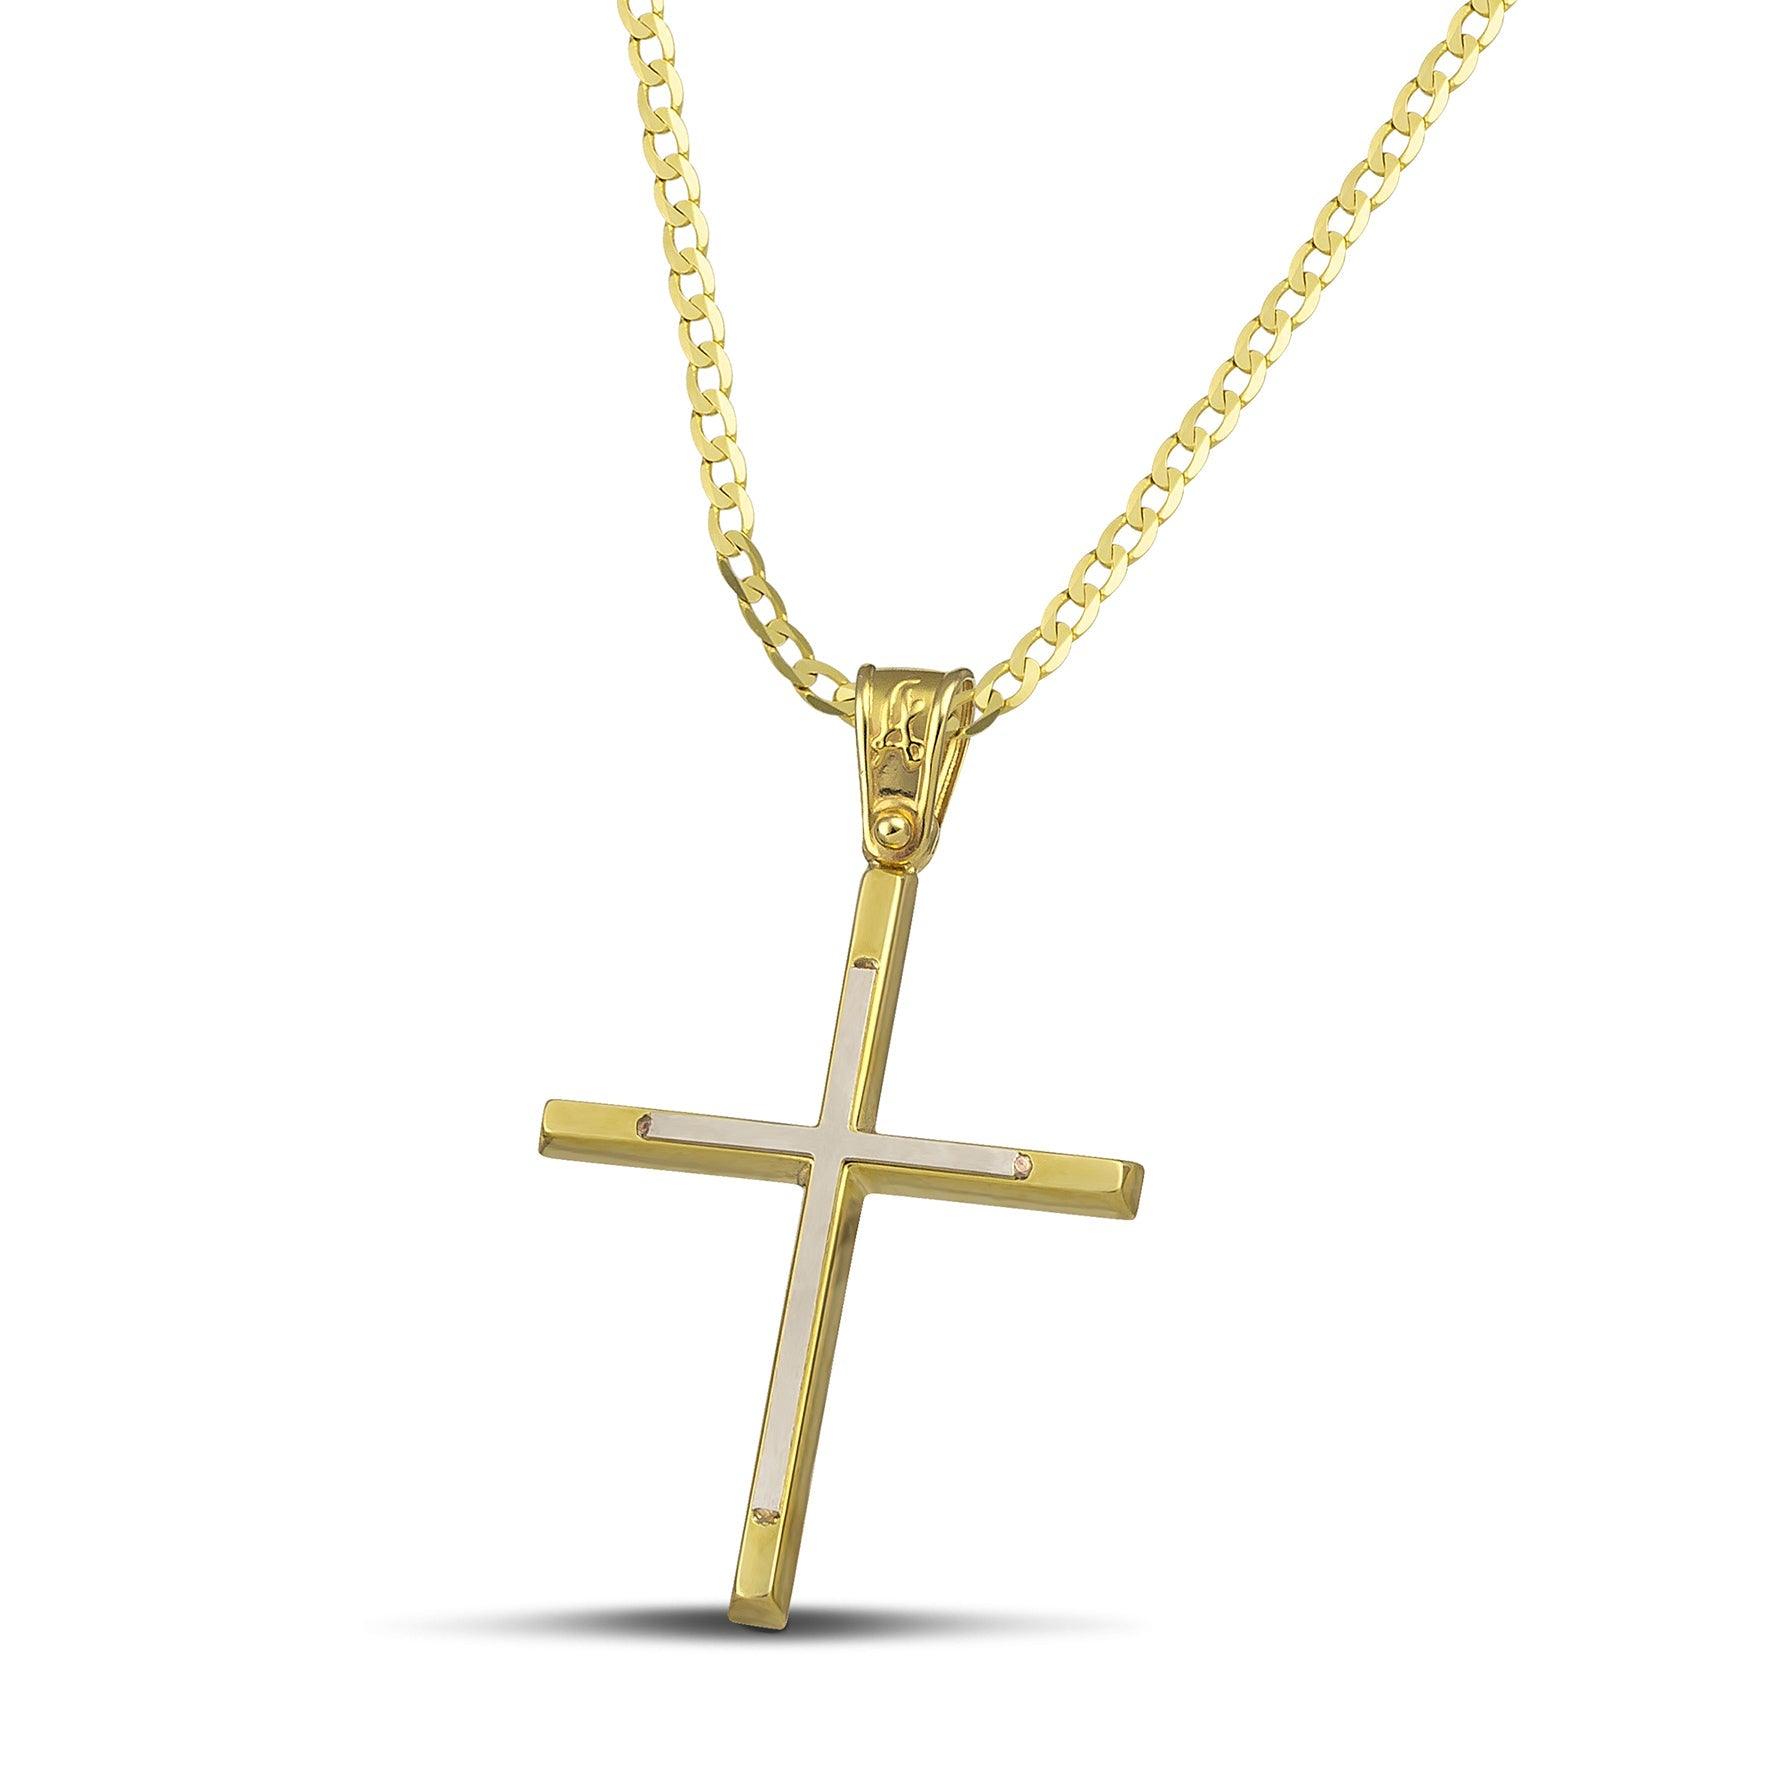 Γυναικείος σταυρός από χρυσό 14 καρατίων και λευκόχρυσο, με κλασσική αλυσίδα.